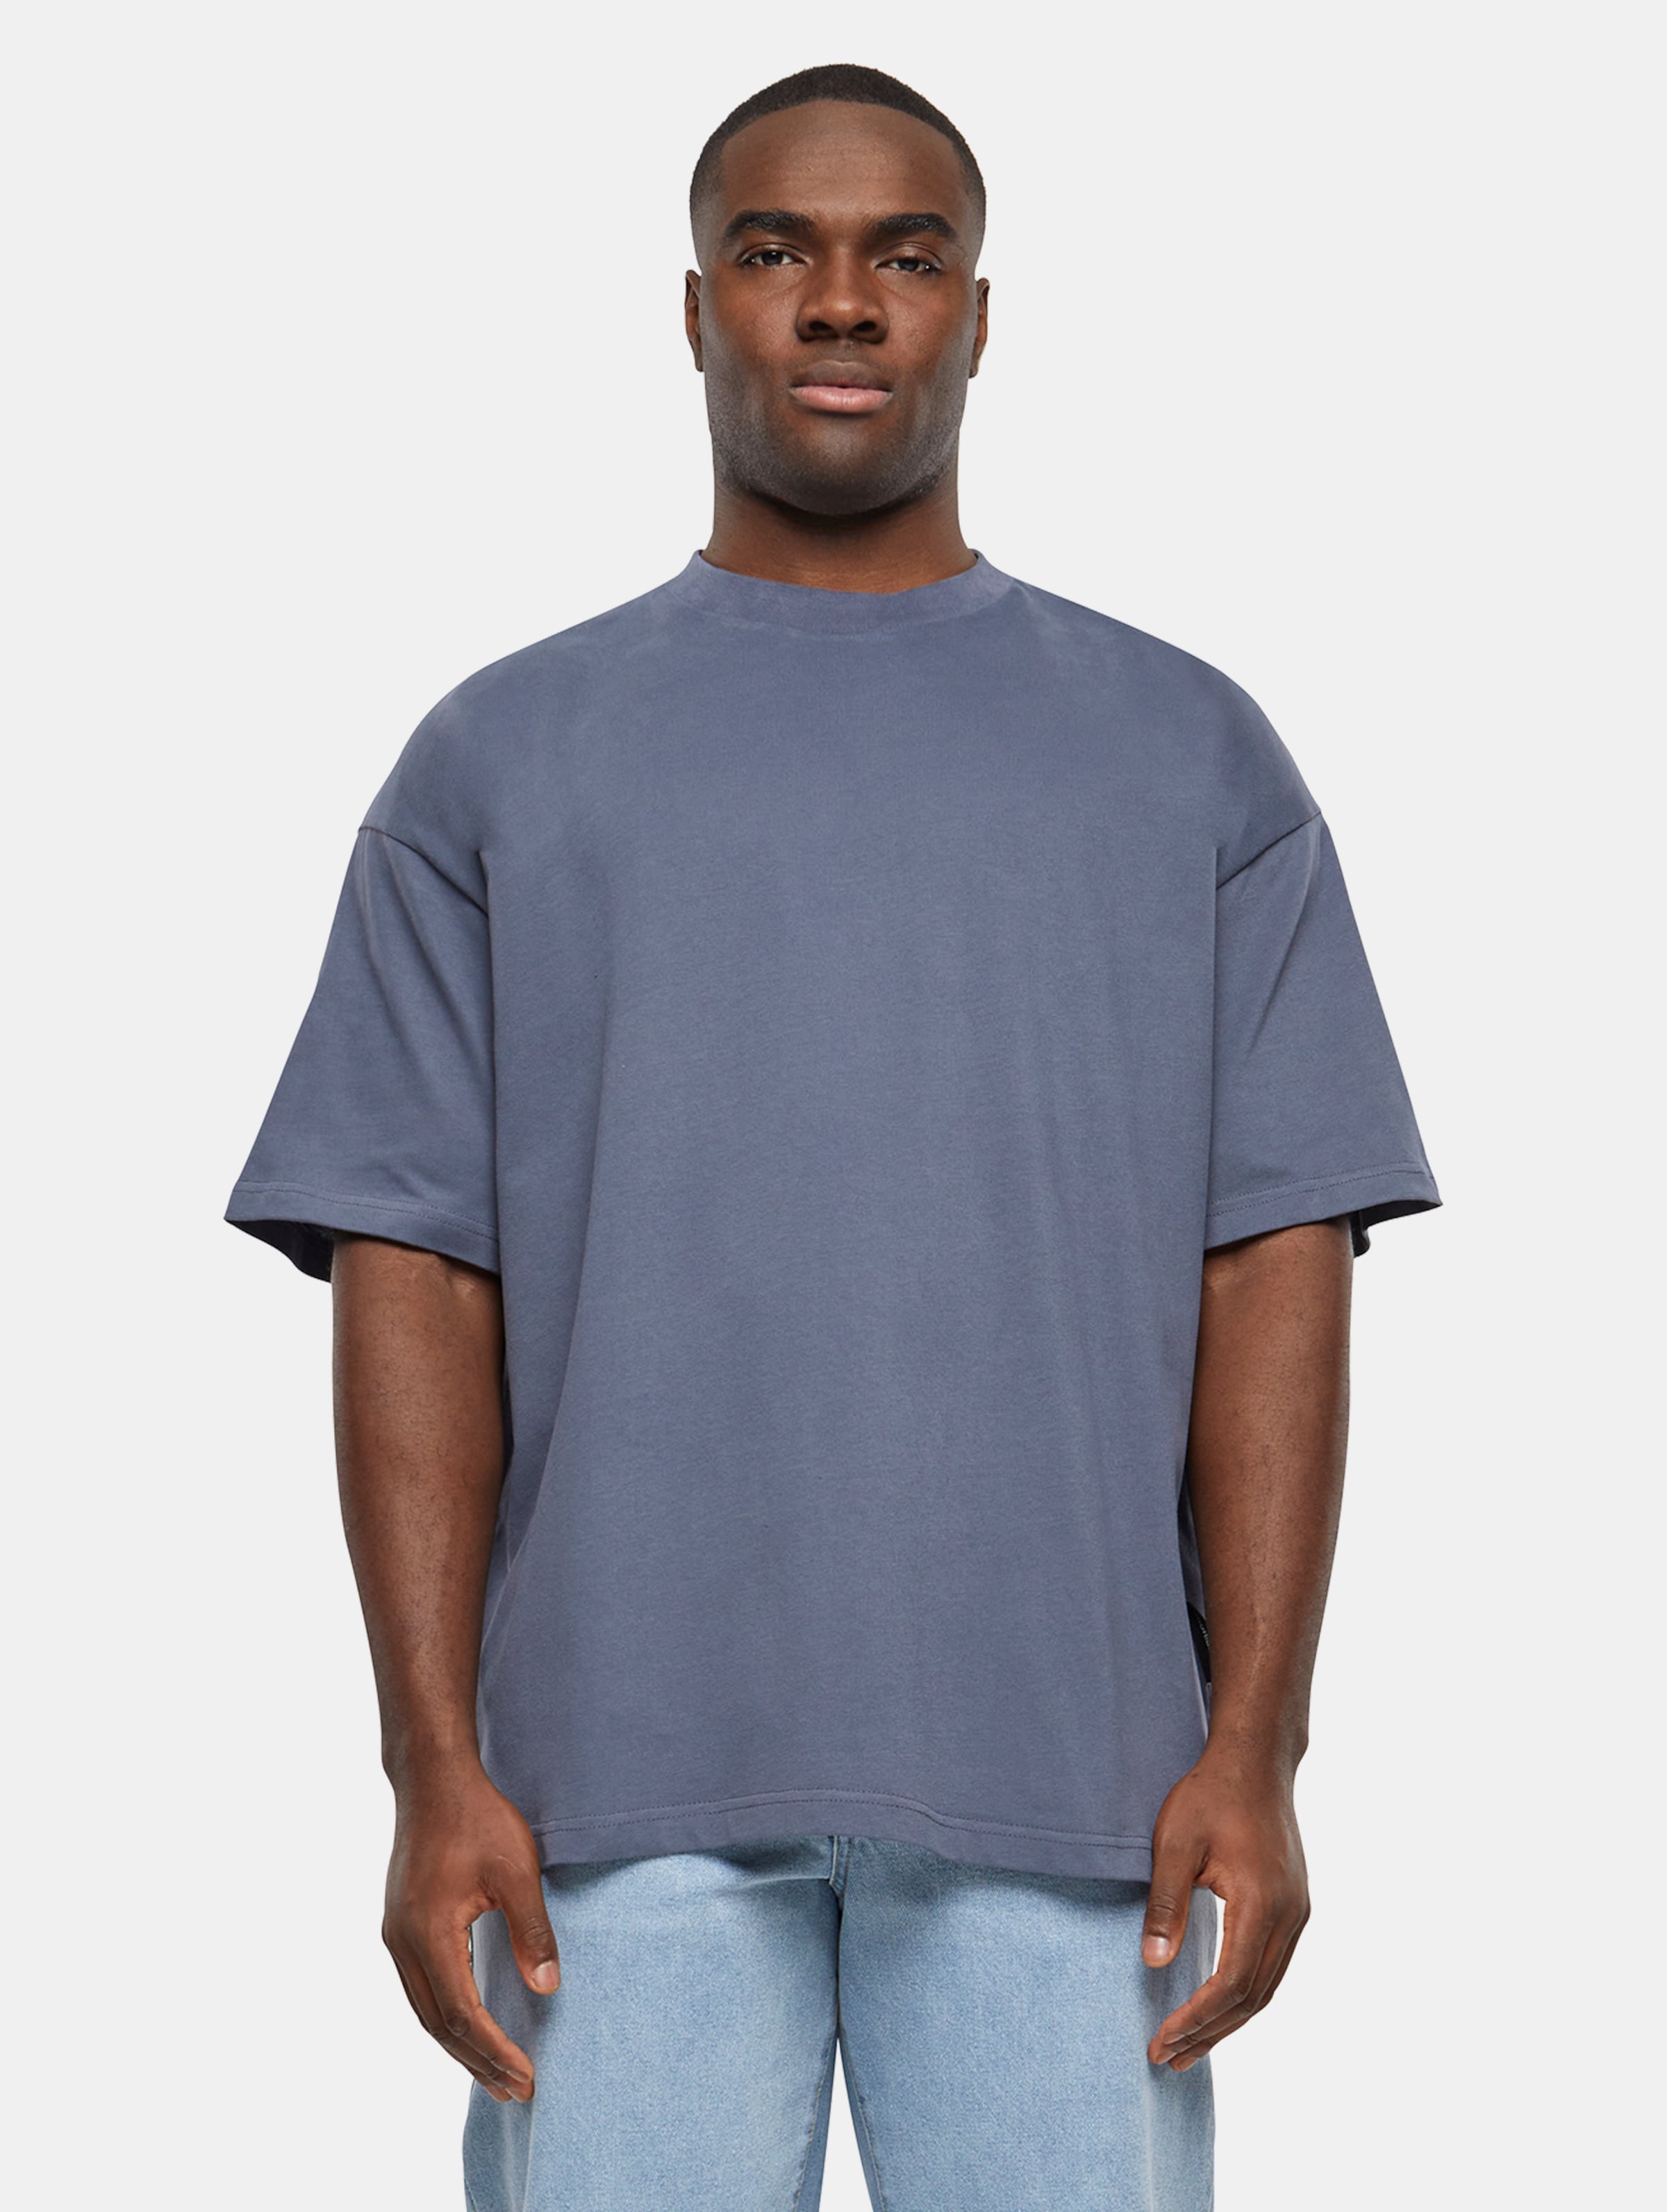 Prohibited Oversized T-Shirts Männer,Unisex op kleur grijs, Maat XXL